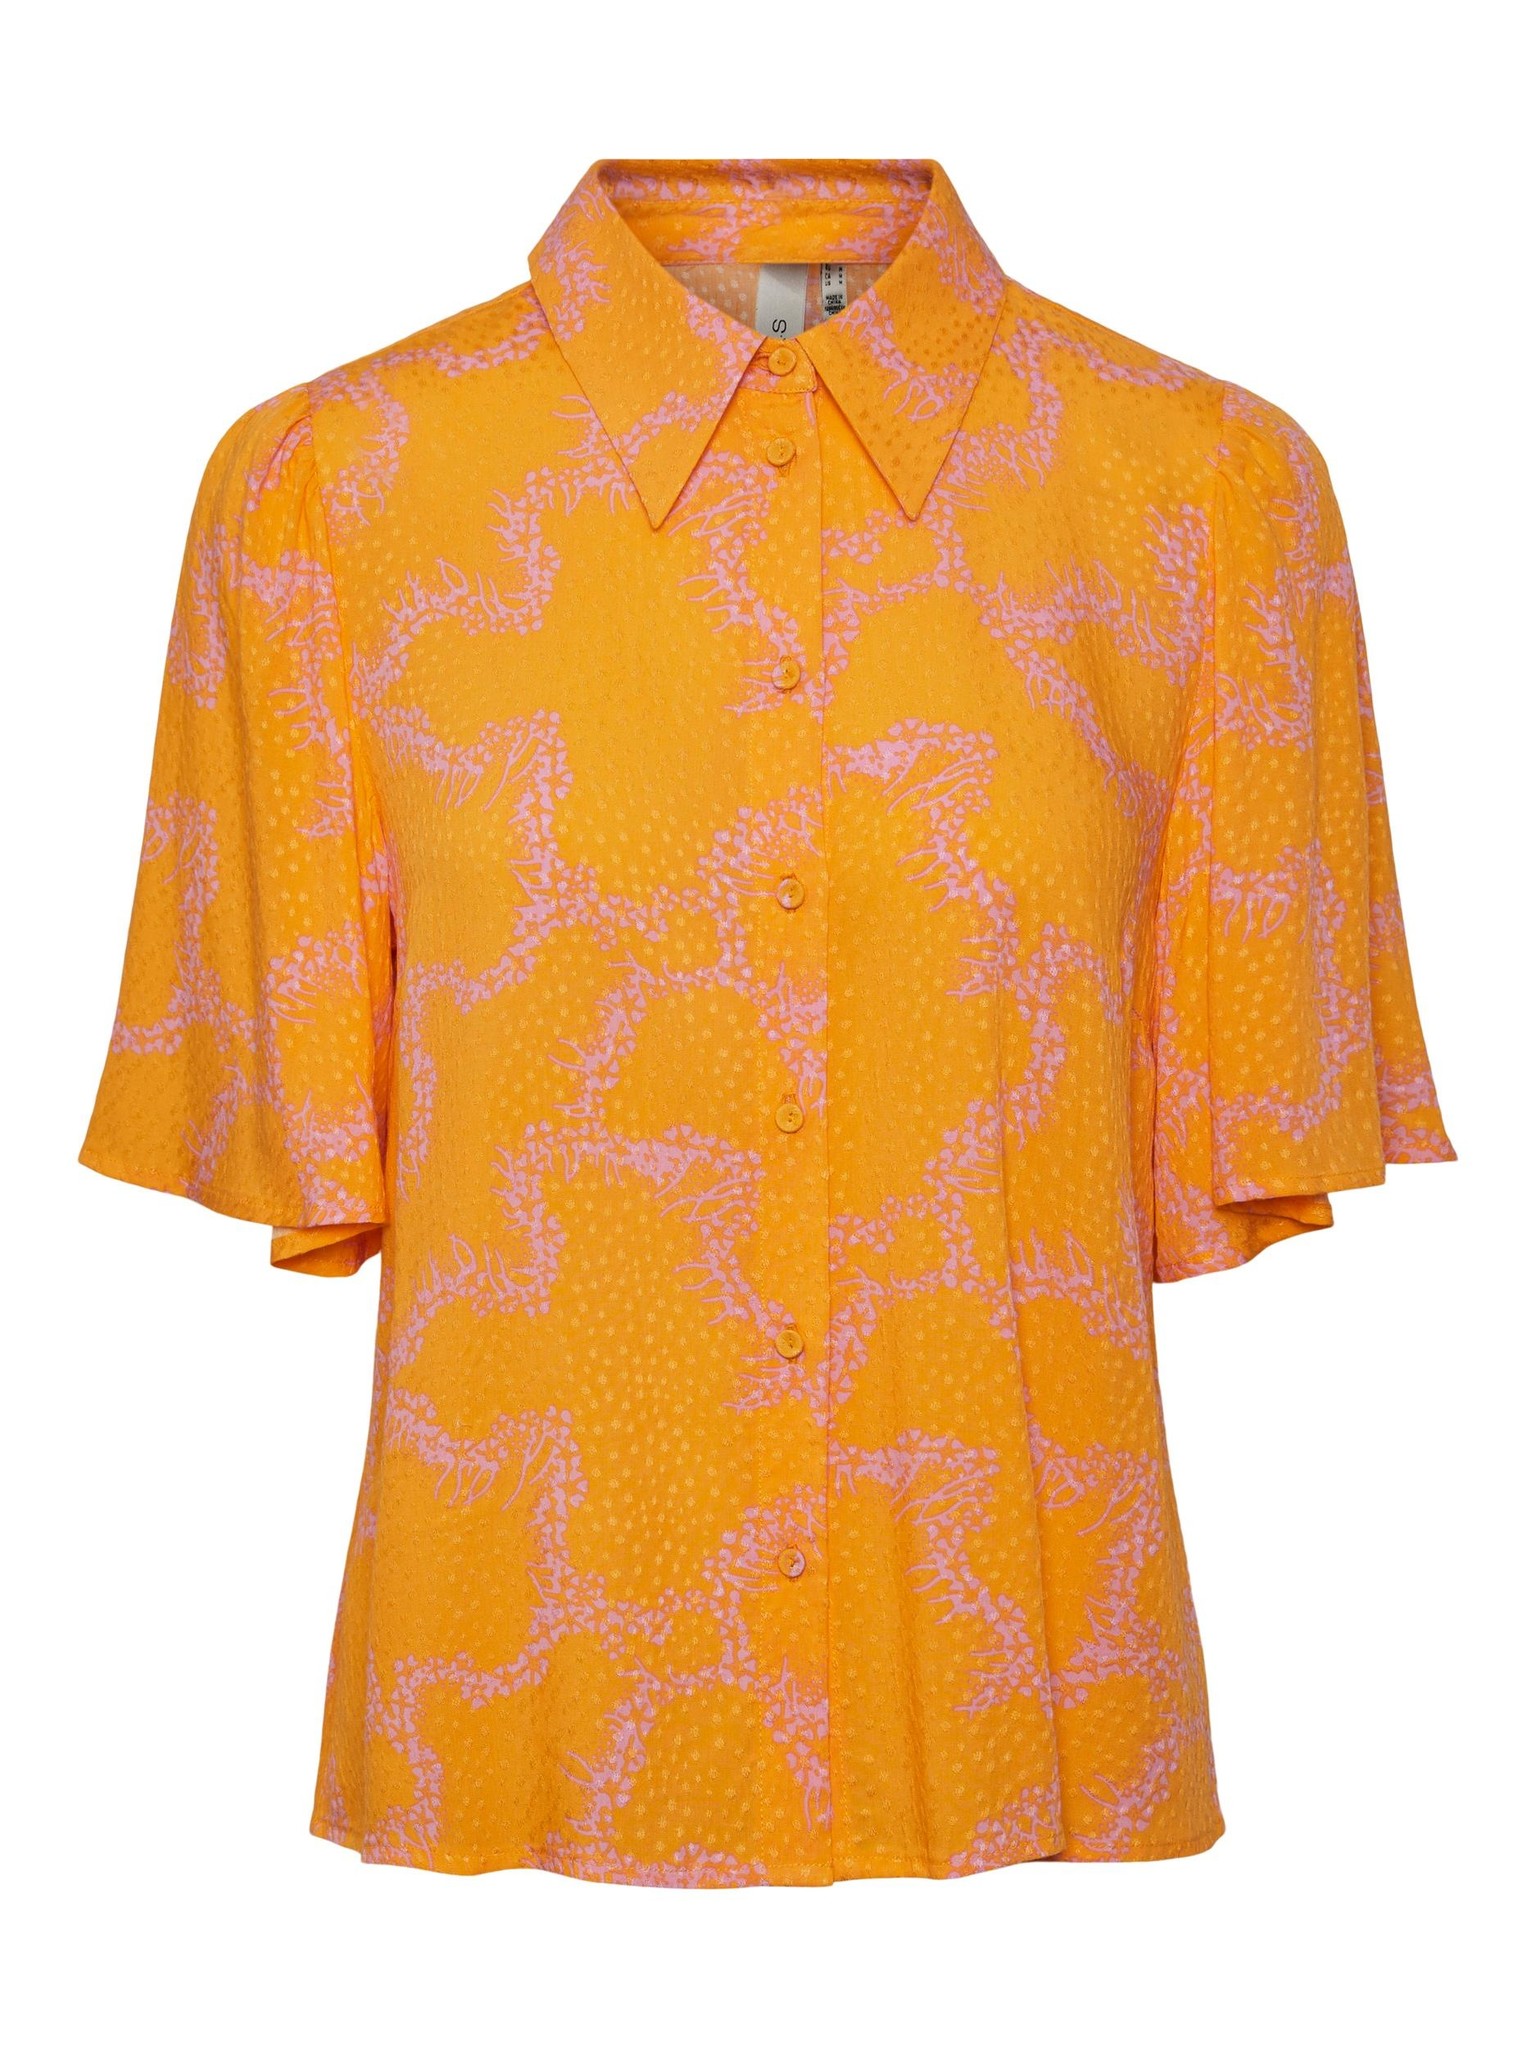 ♣ Yasmolea Blazing Orange Shirt-5